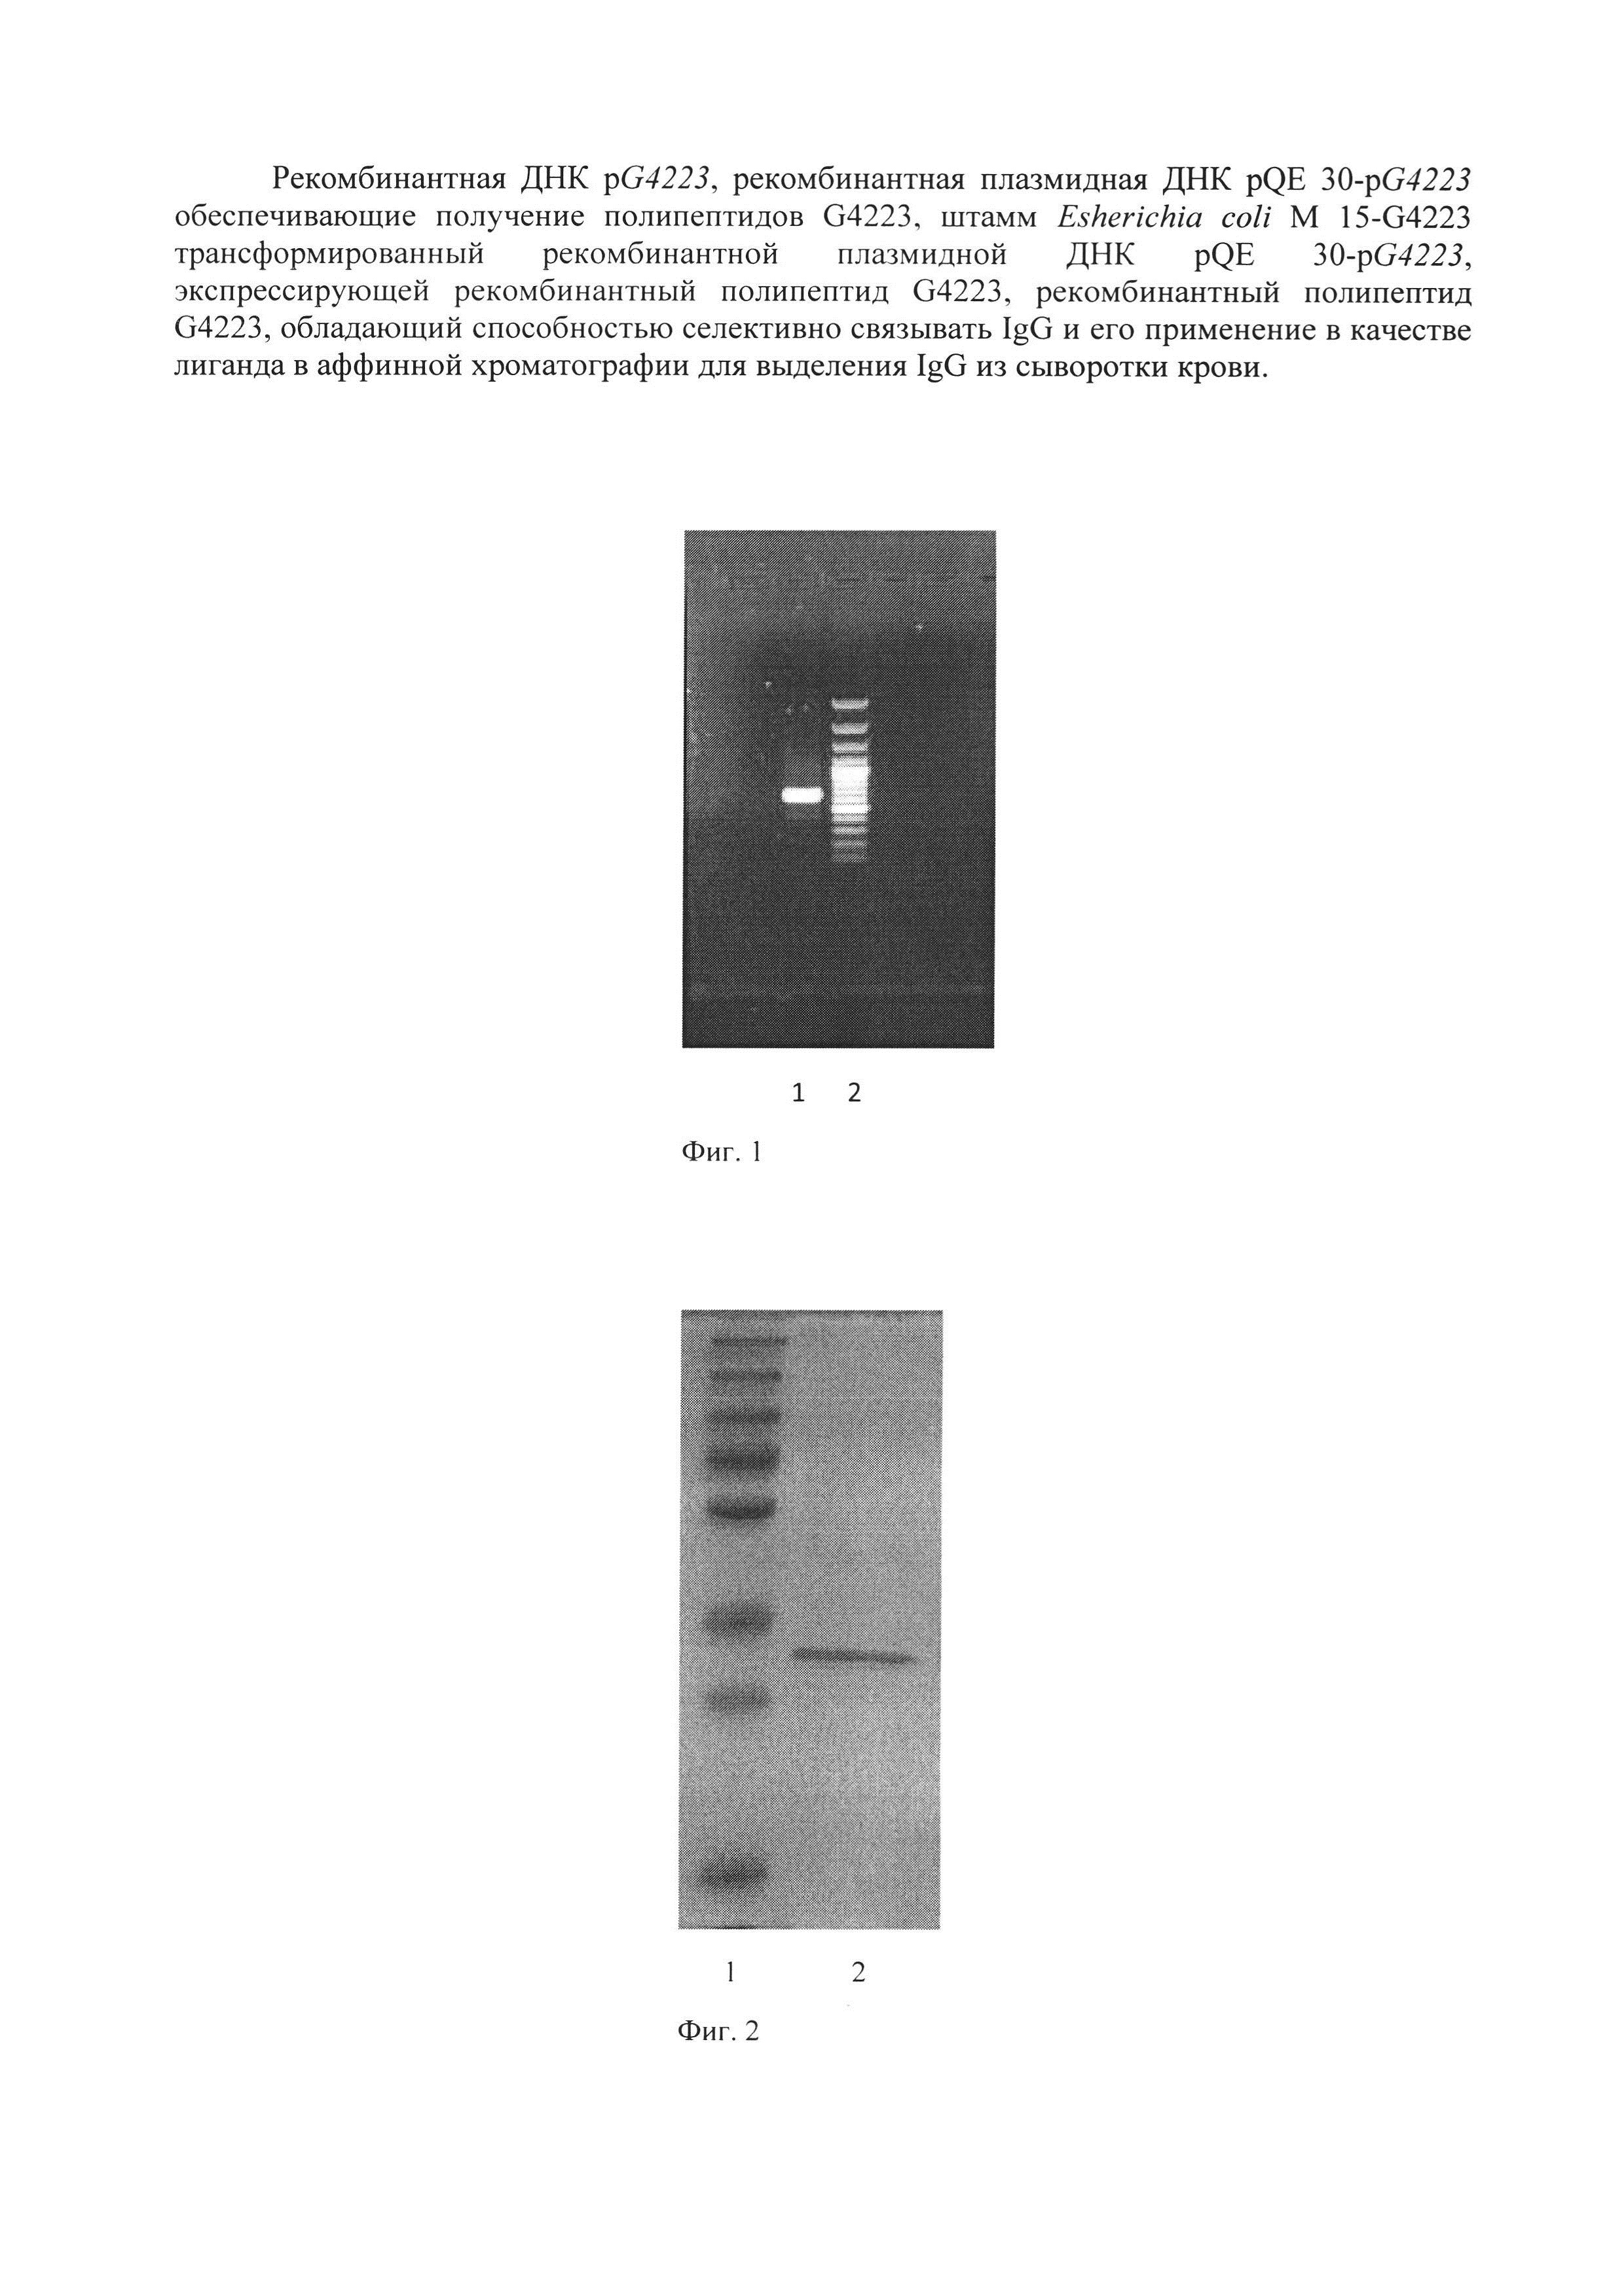 Рекомбинантные ДНК pG4223 и плазмидная ДНК pQE 30-pG4223, штамм Escherichia coli M 15-G4223, обеспечивающие получение полипептида G4223, селективно связывающего IgG, и его применение в аффинной хроматографии для выделения IgG